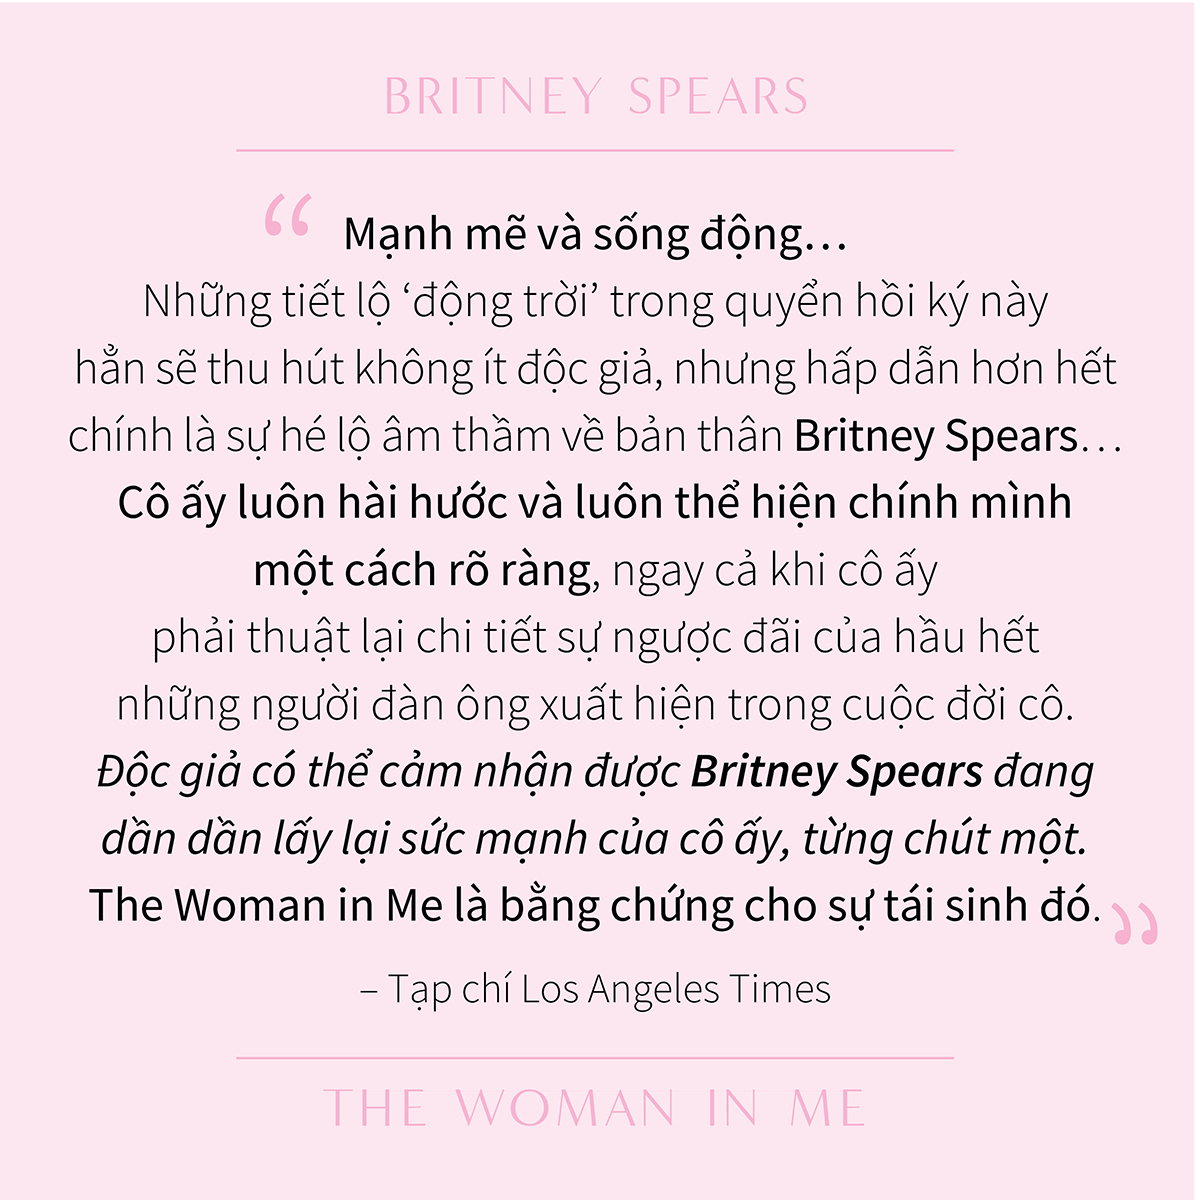 Britney Spears - Người Đàn Bà Trong Tôi